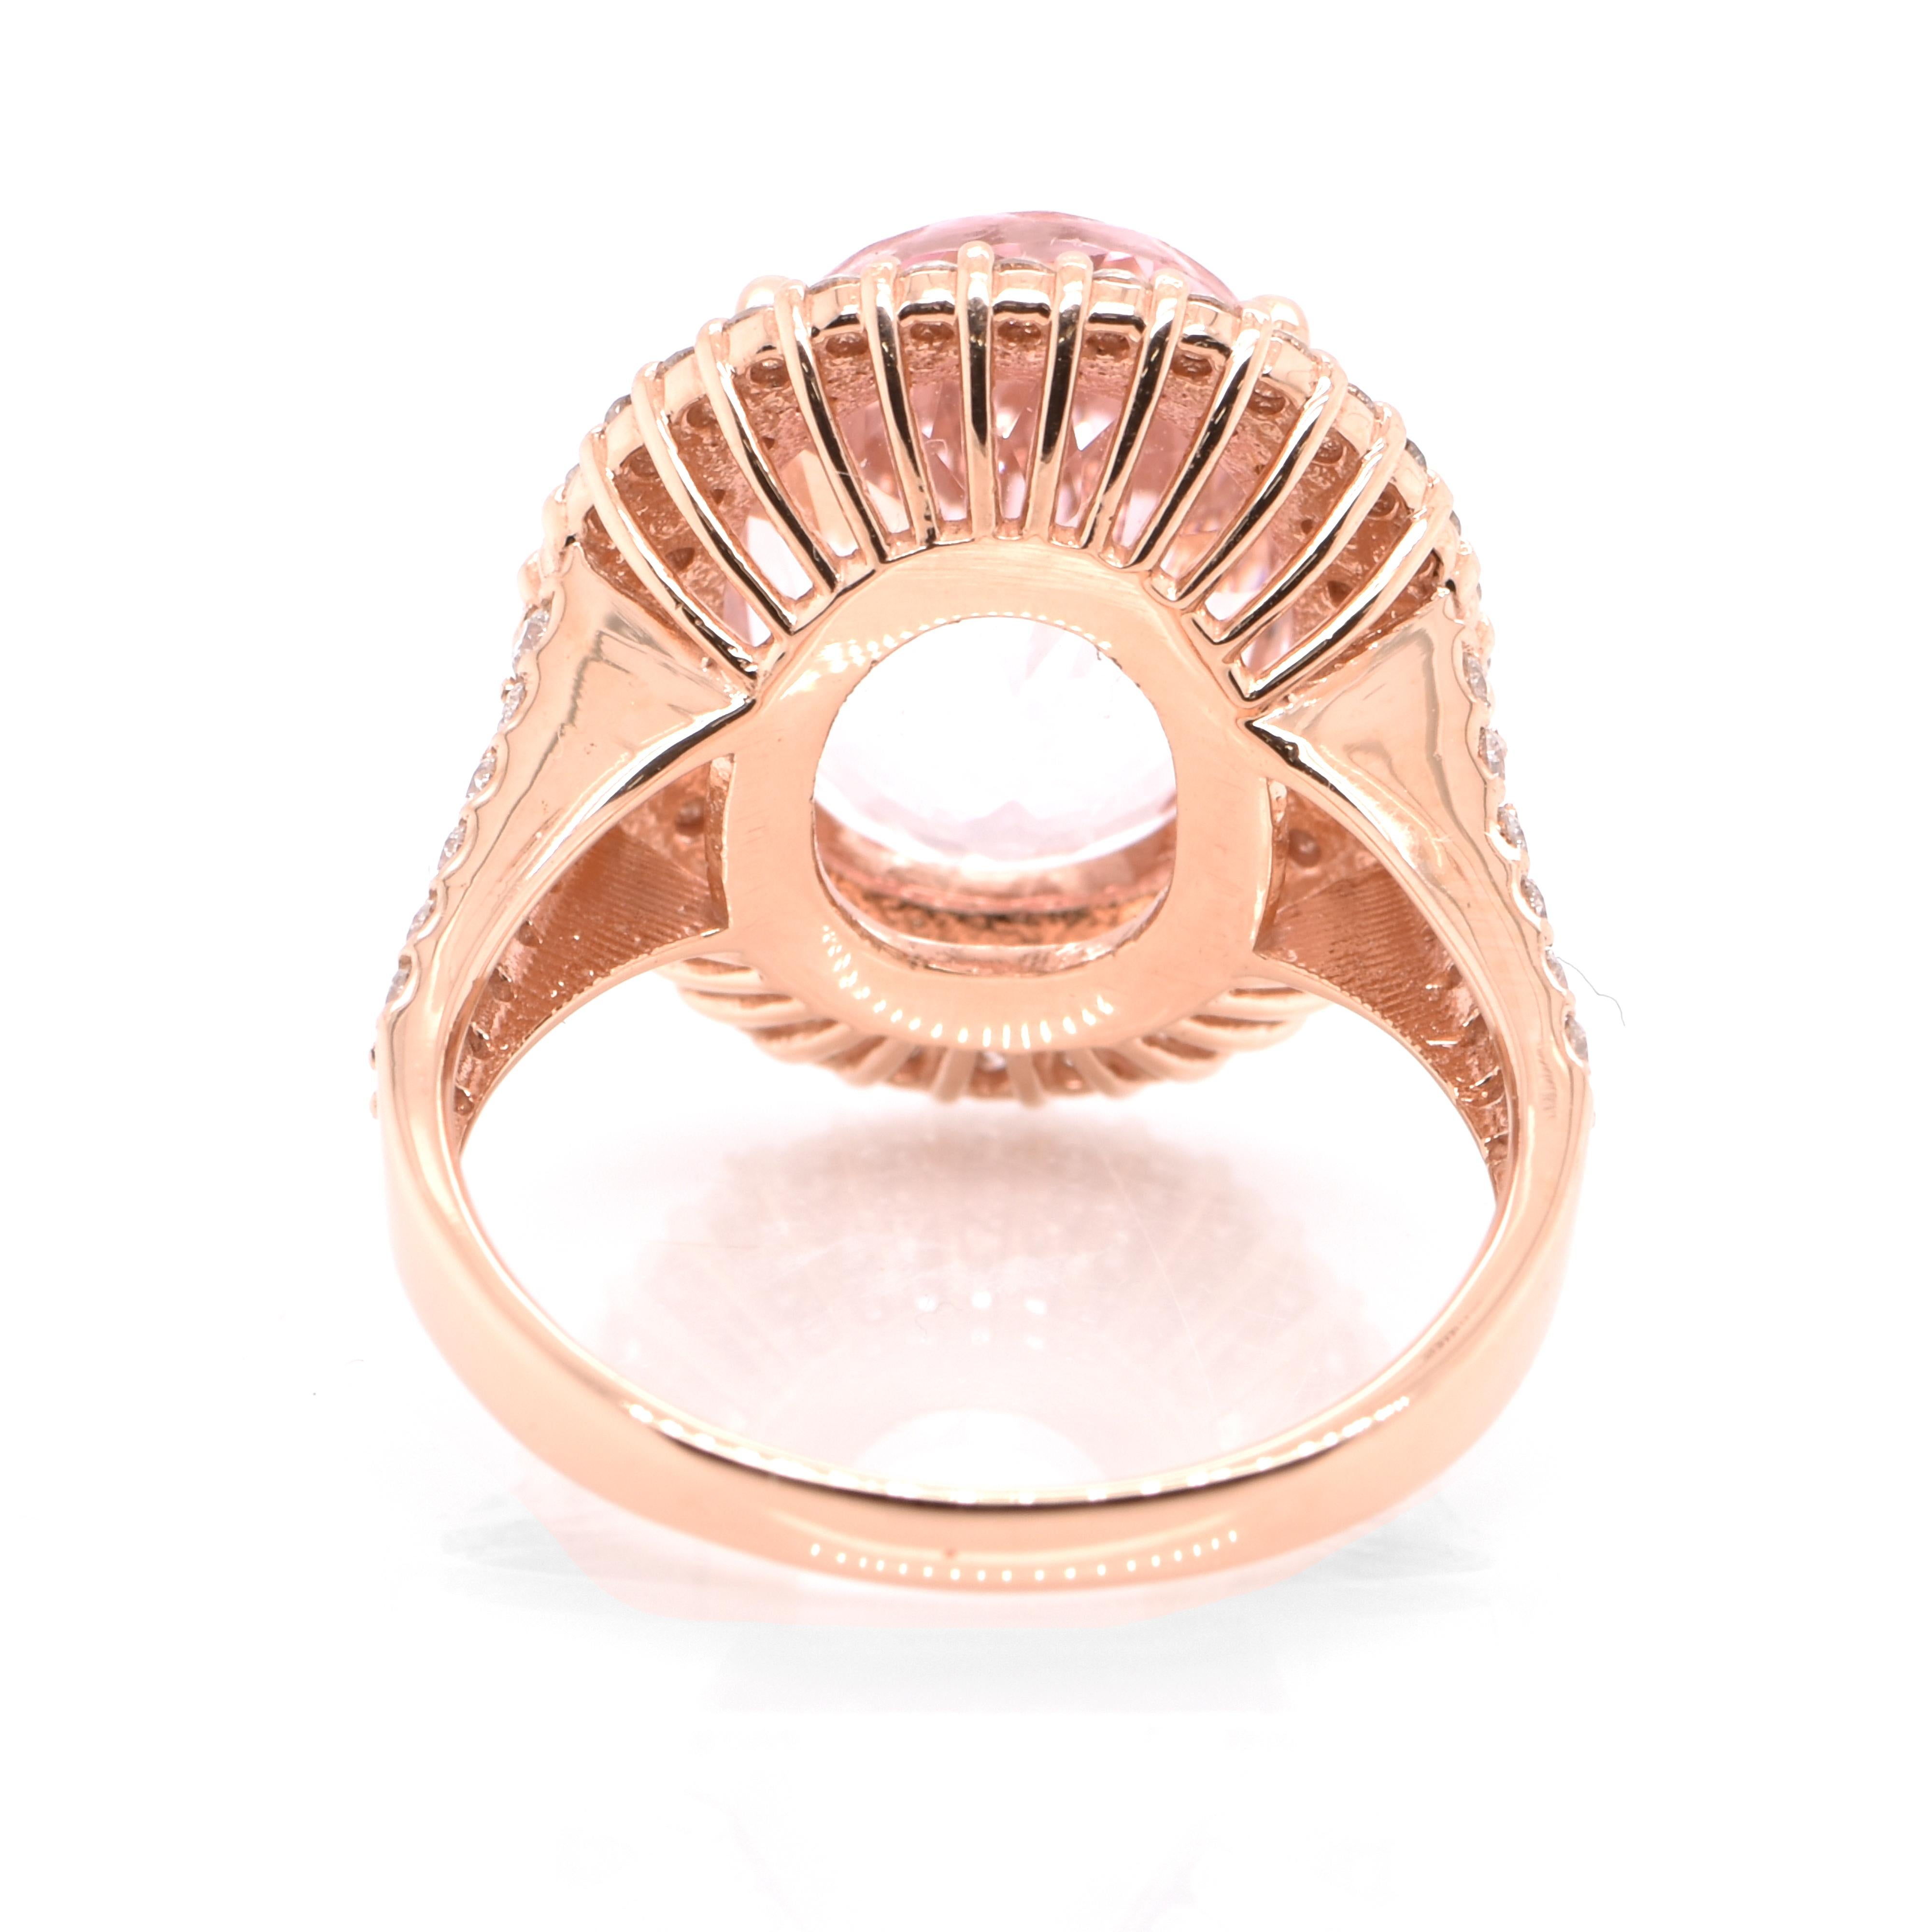 Modern 5.38 Carat Natural Sakura Pink Morganite and Diamond Ring Set in 18K Rose Gold